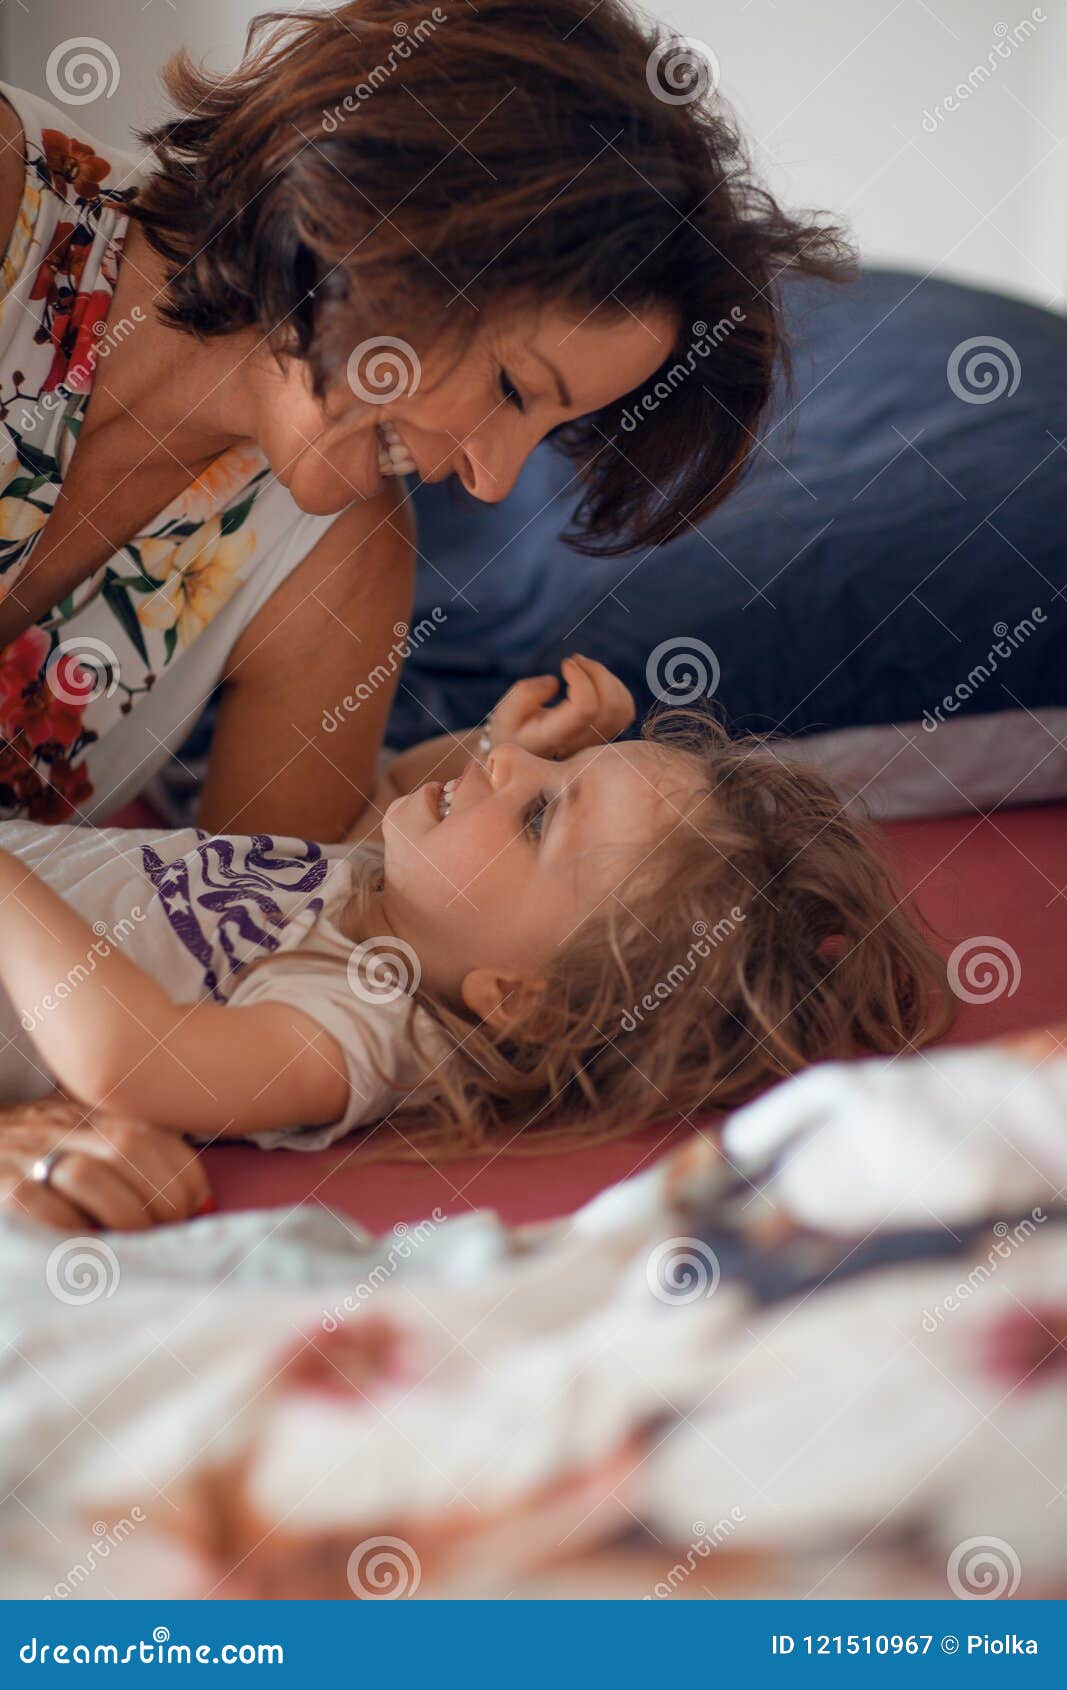 Мать лесбиянство. Мать и дочь обнимаются постель. Мама целует дочку в кровати. Мама обнимает дочь в кровати. Ребенок прижимается к маме.